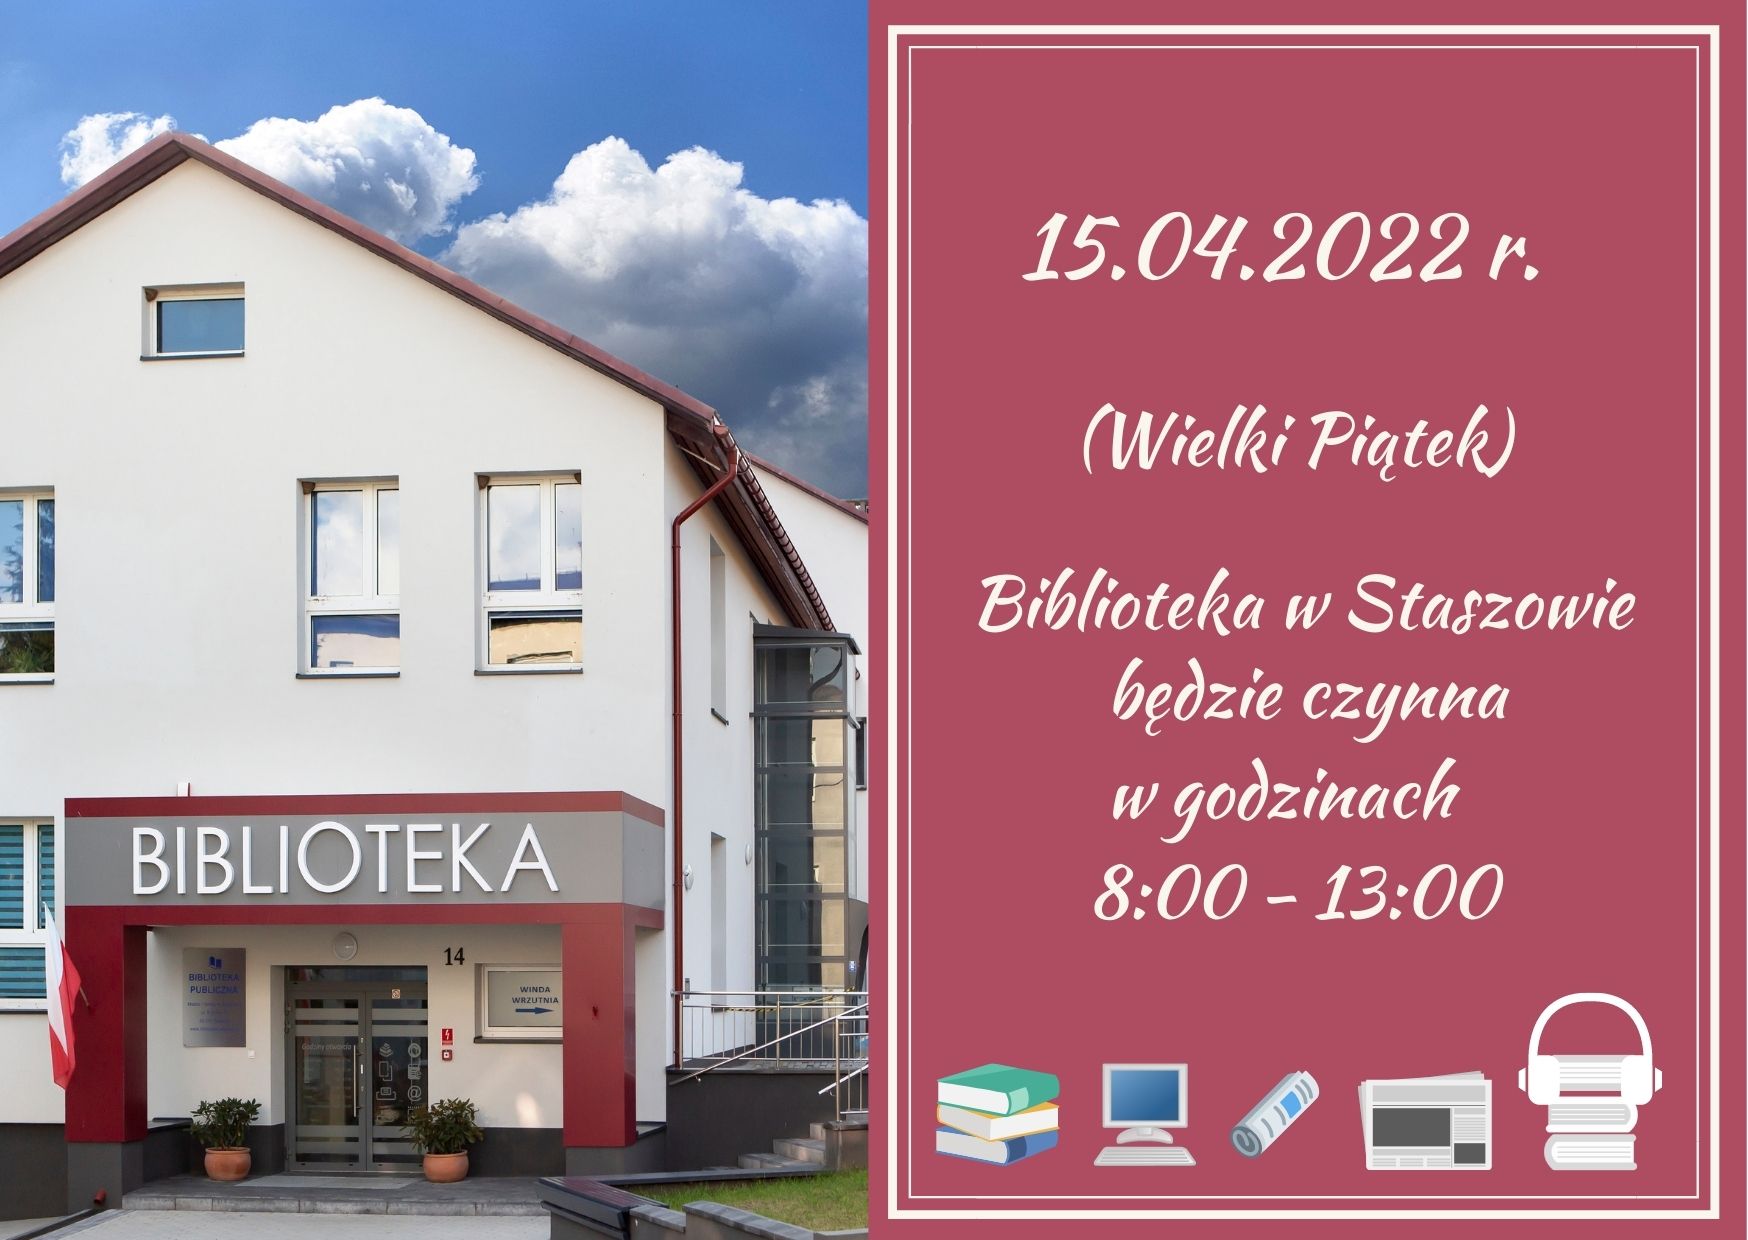 W dniu 15.04.2022 r. (Wielki Piątek) Biblioteka w Staszowie czynna od 8:00 do 13:00.